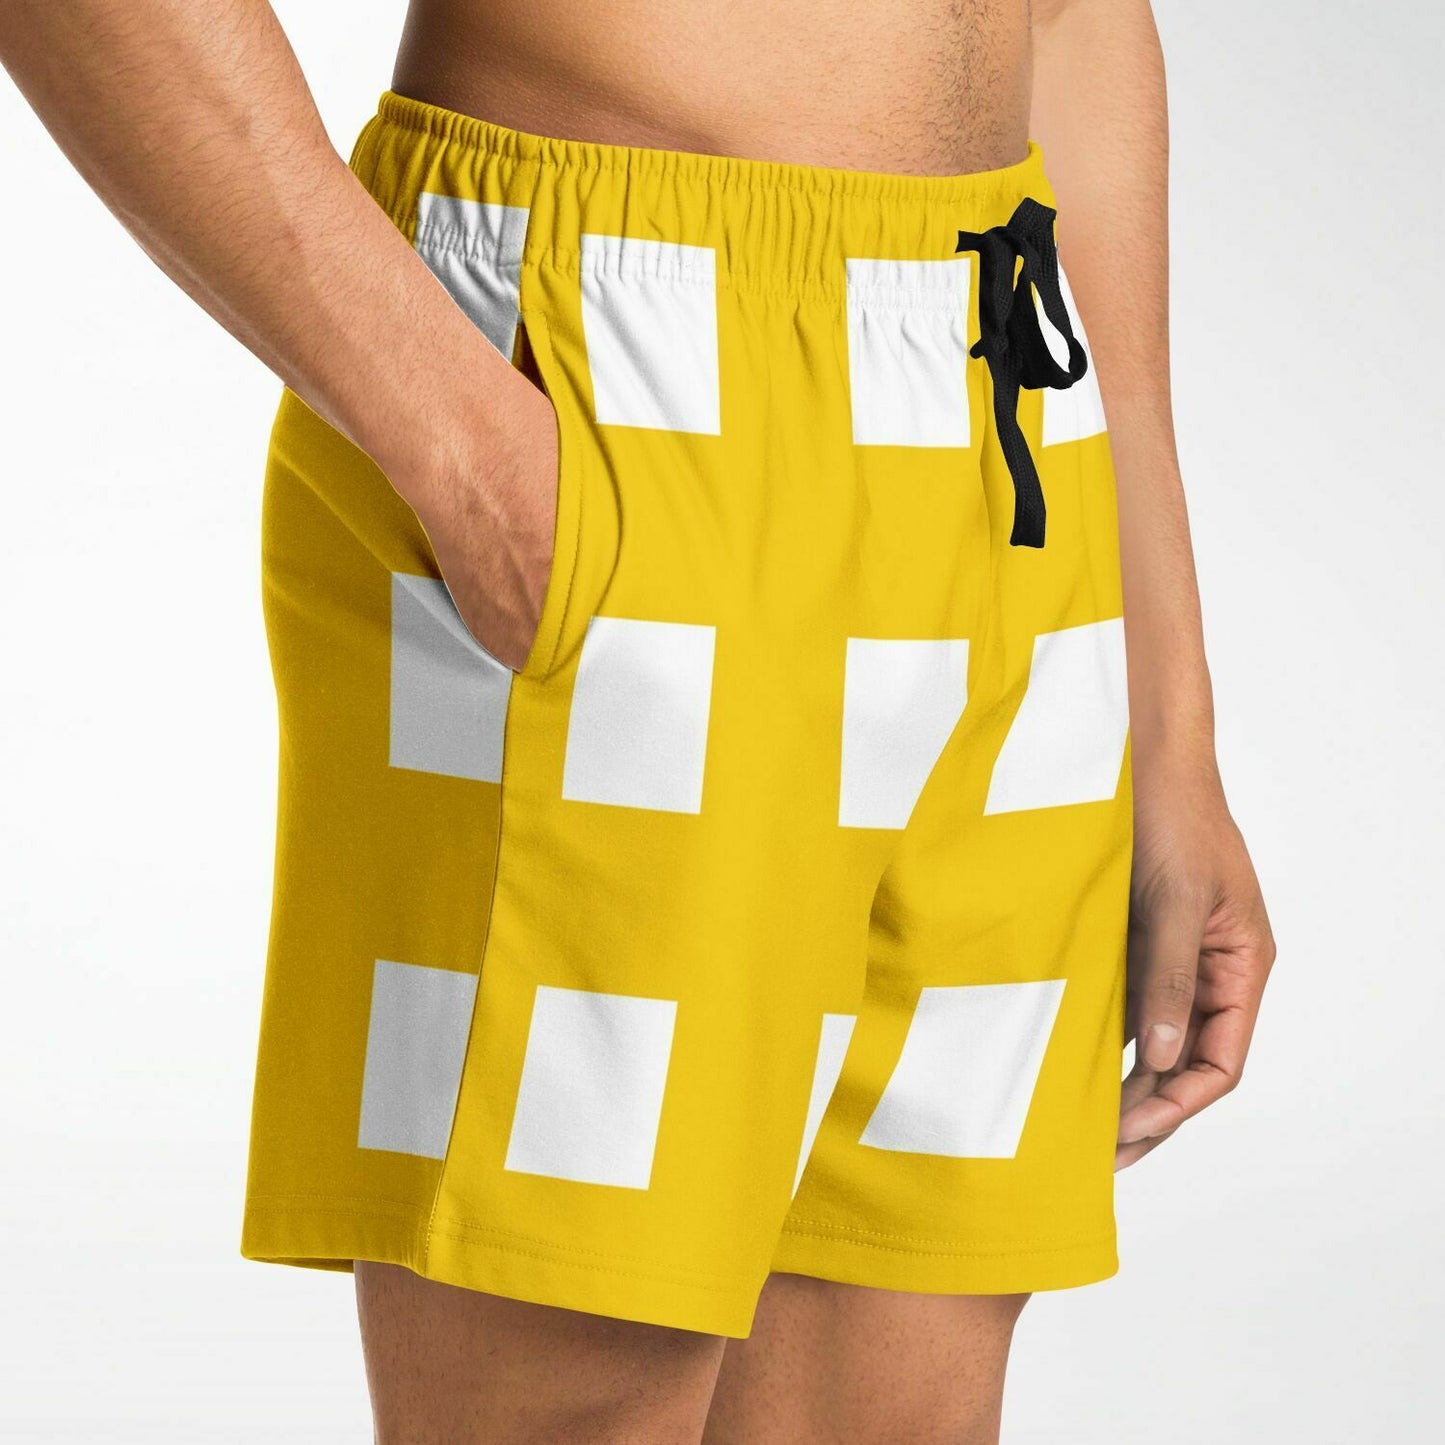 Square THREE Drawstring Mens Fashion Shorts